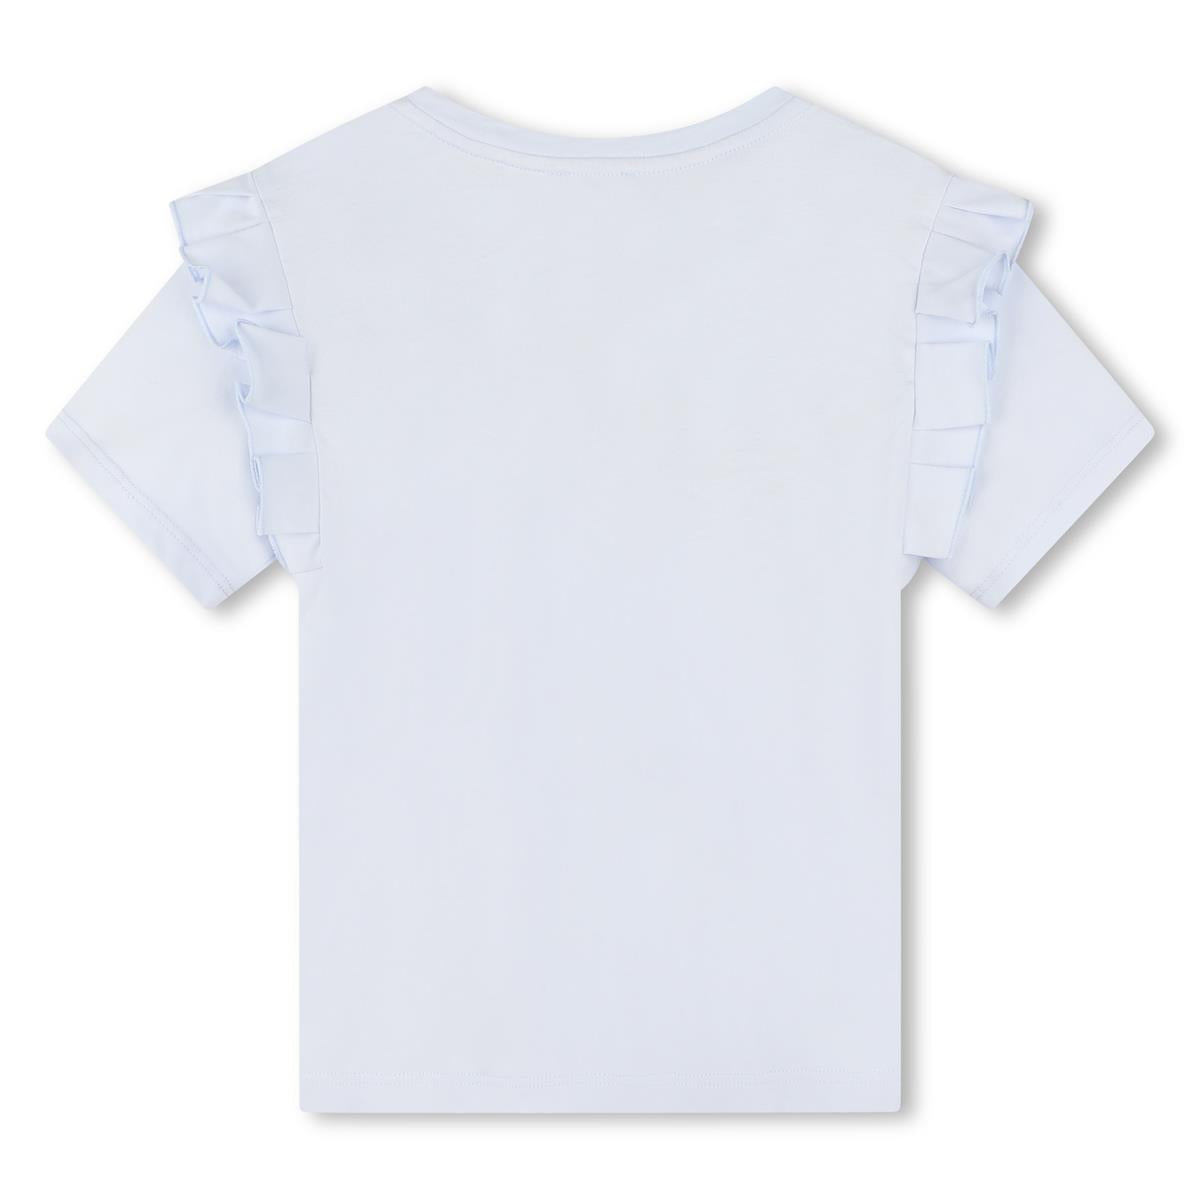 Girls Light Blue Logo Cotton T-Shirt